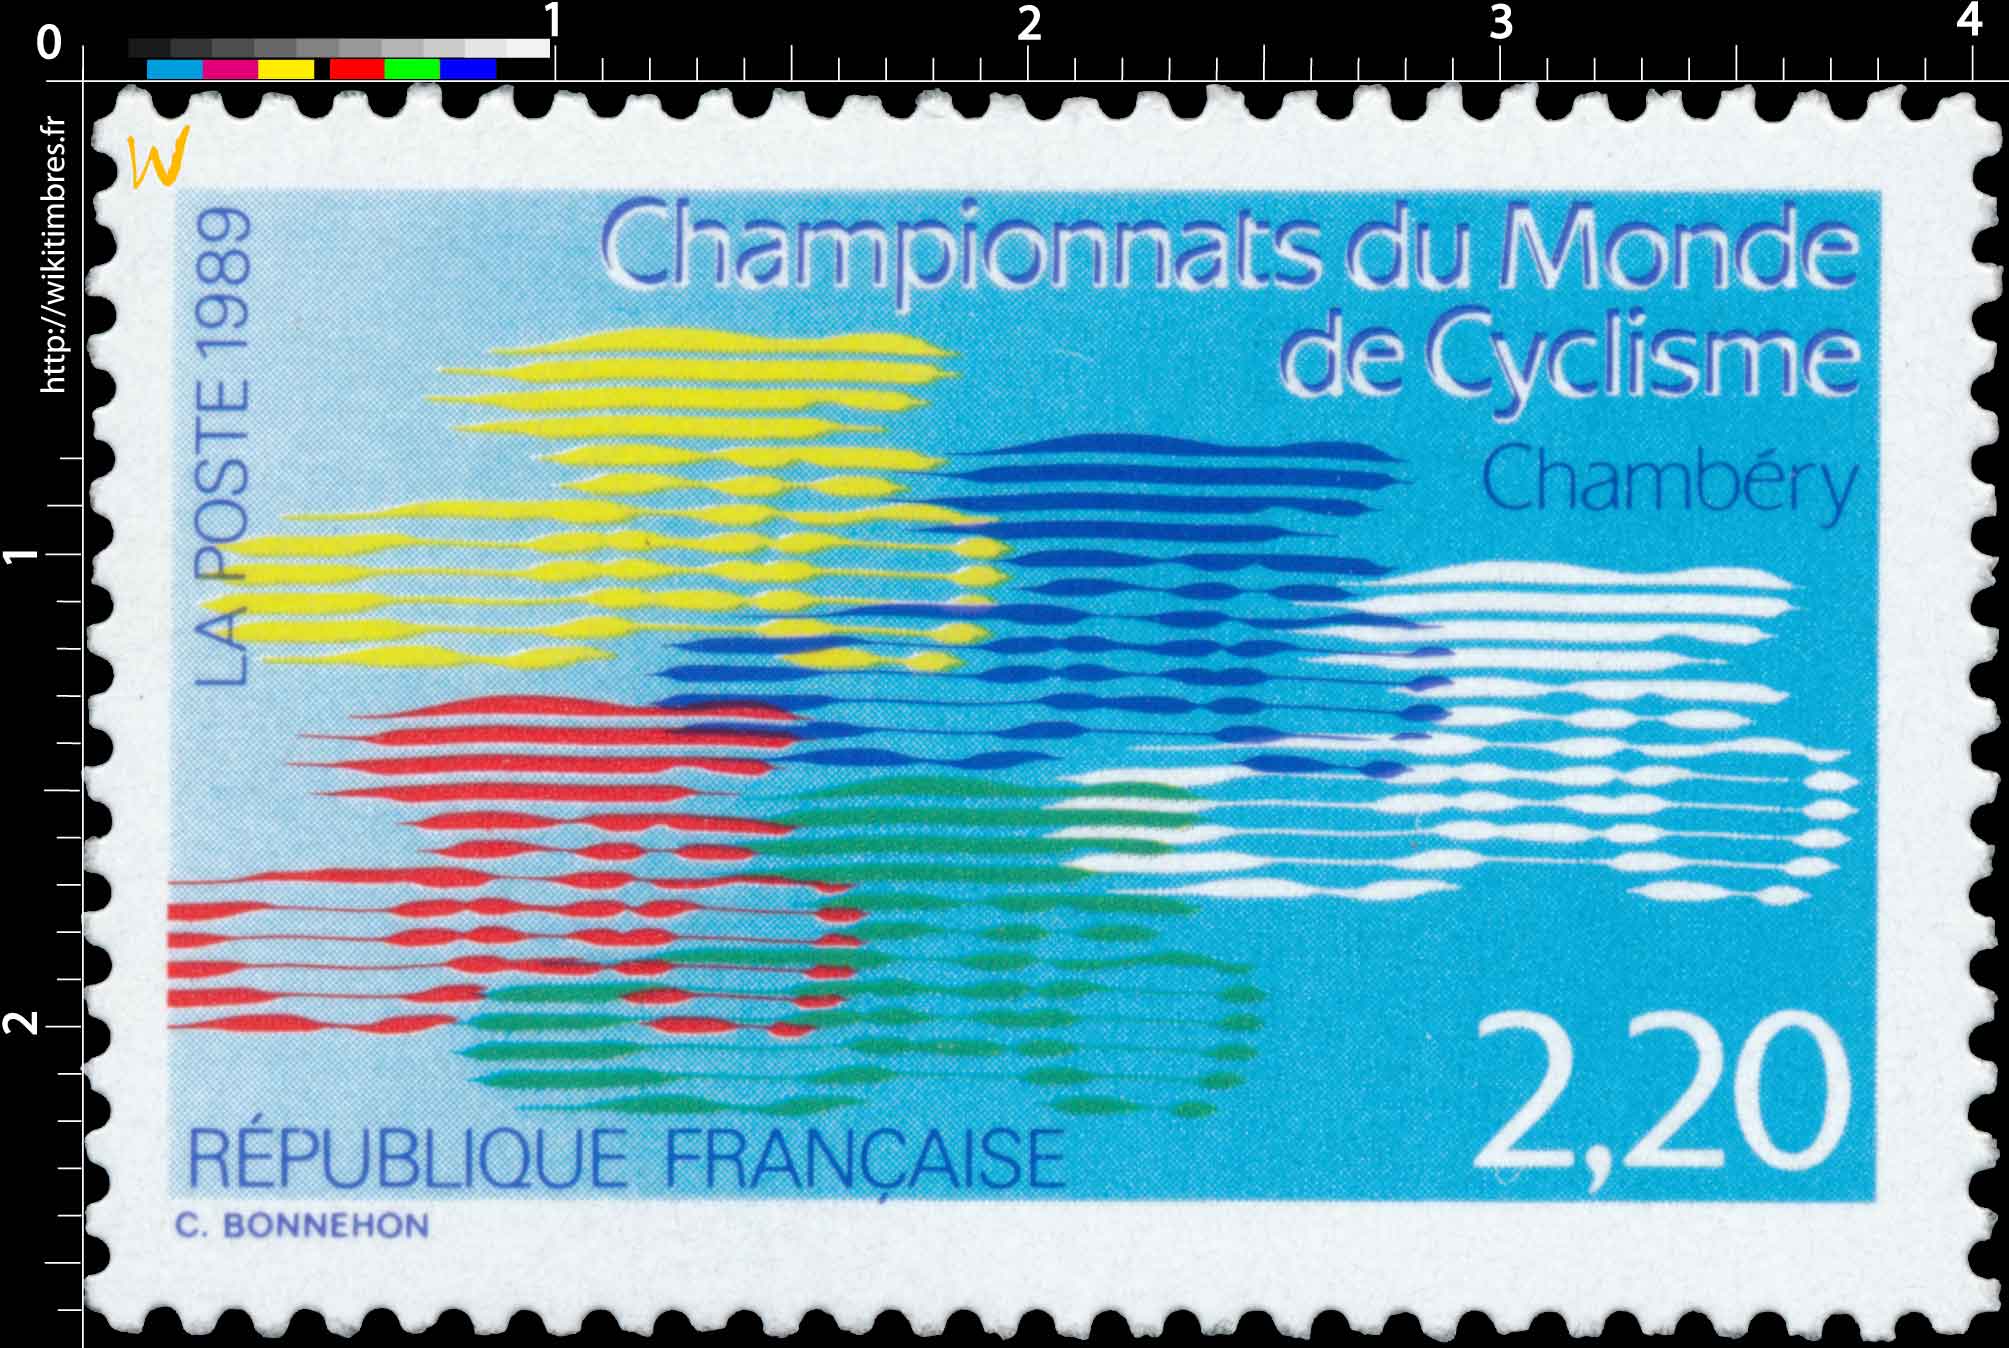 1989 Championnats du Monde de Cyclisme Chambéry